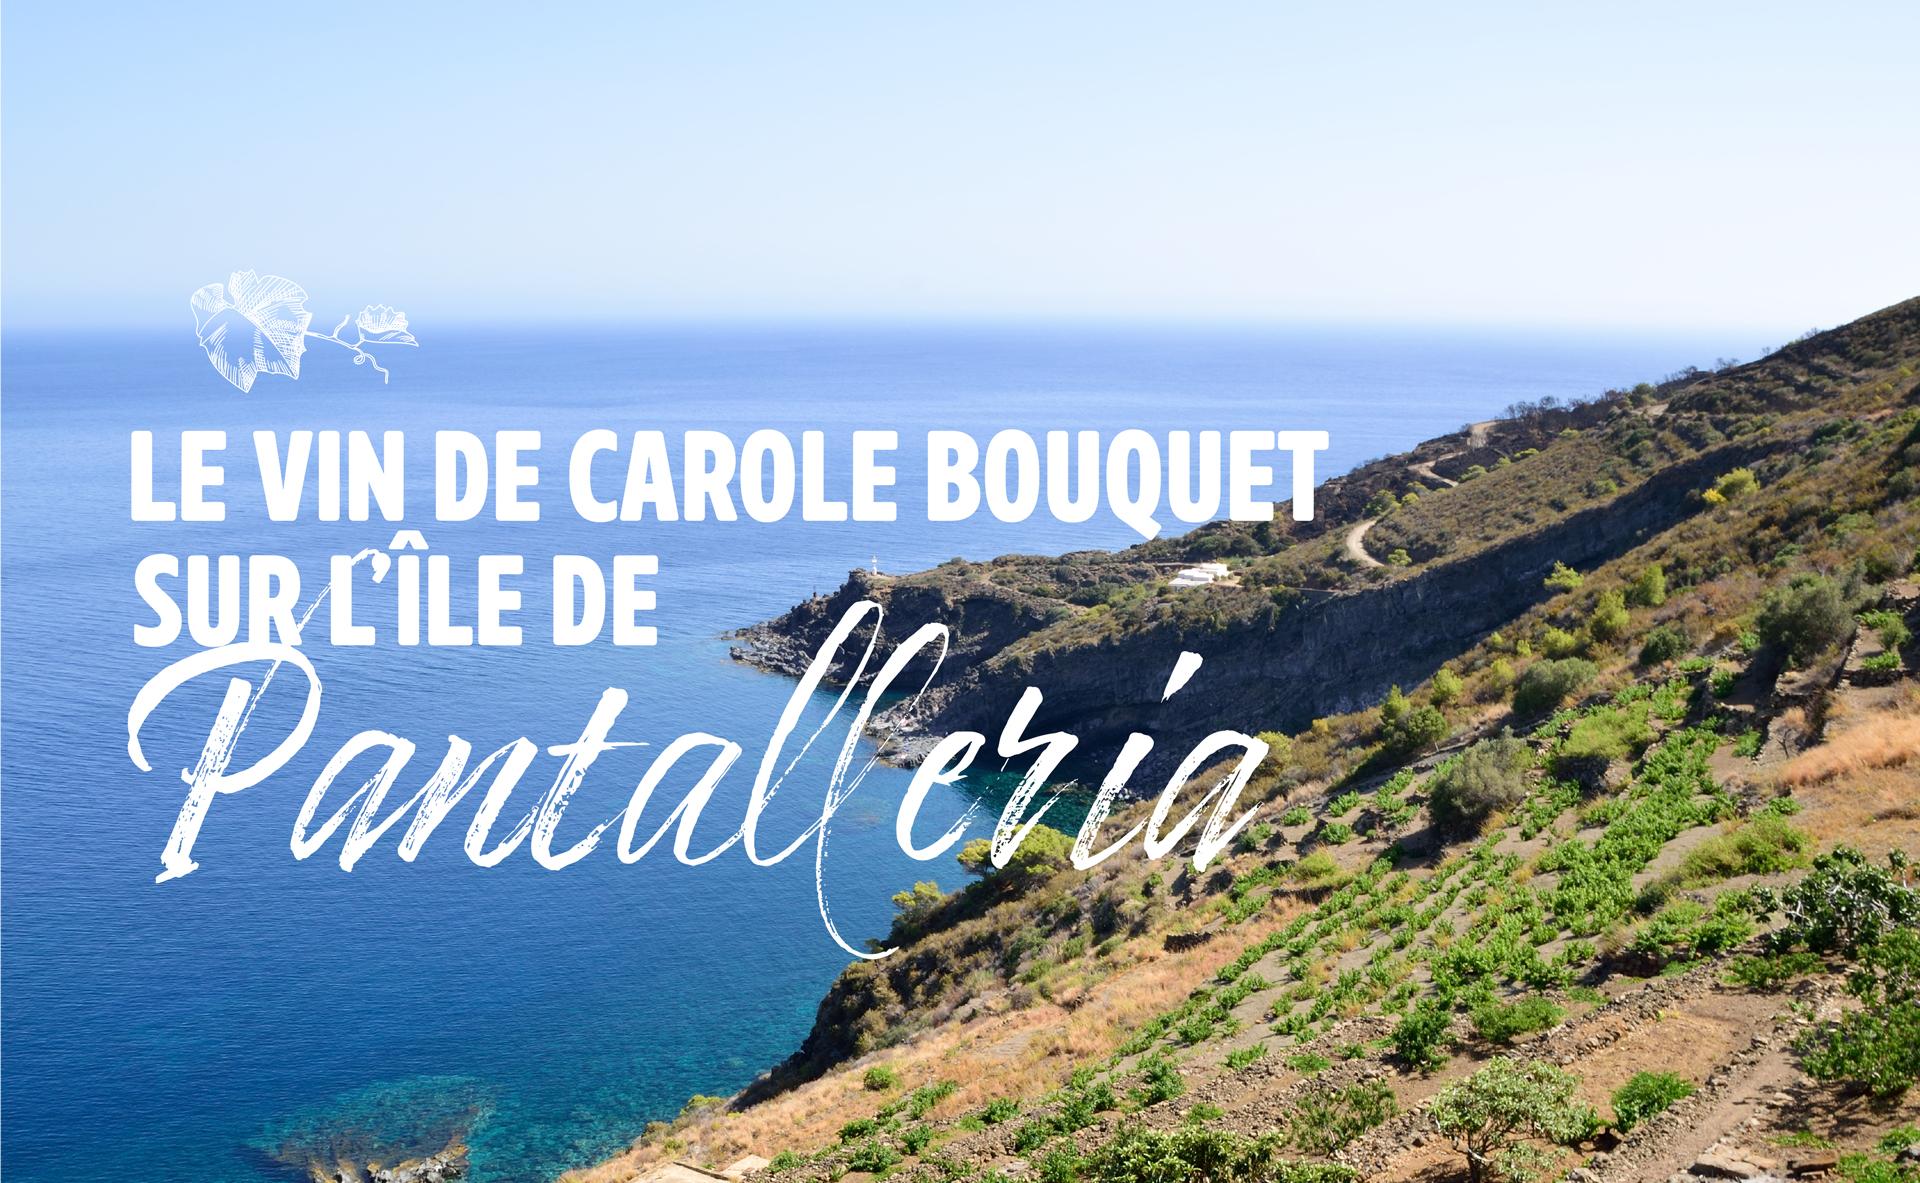 L’île de Pantelleria, à la découverte du vin de Carole Bouquet